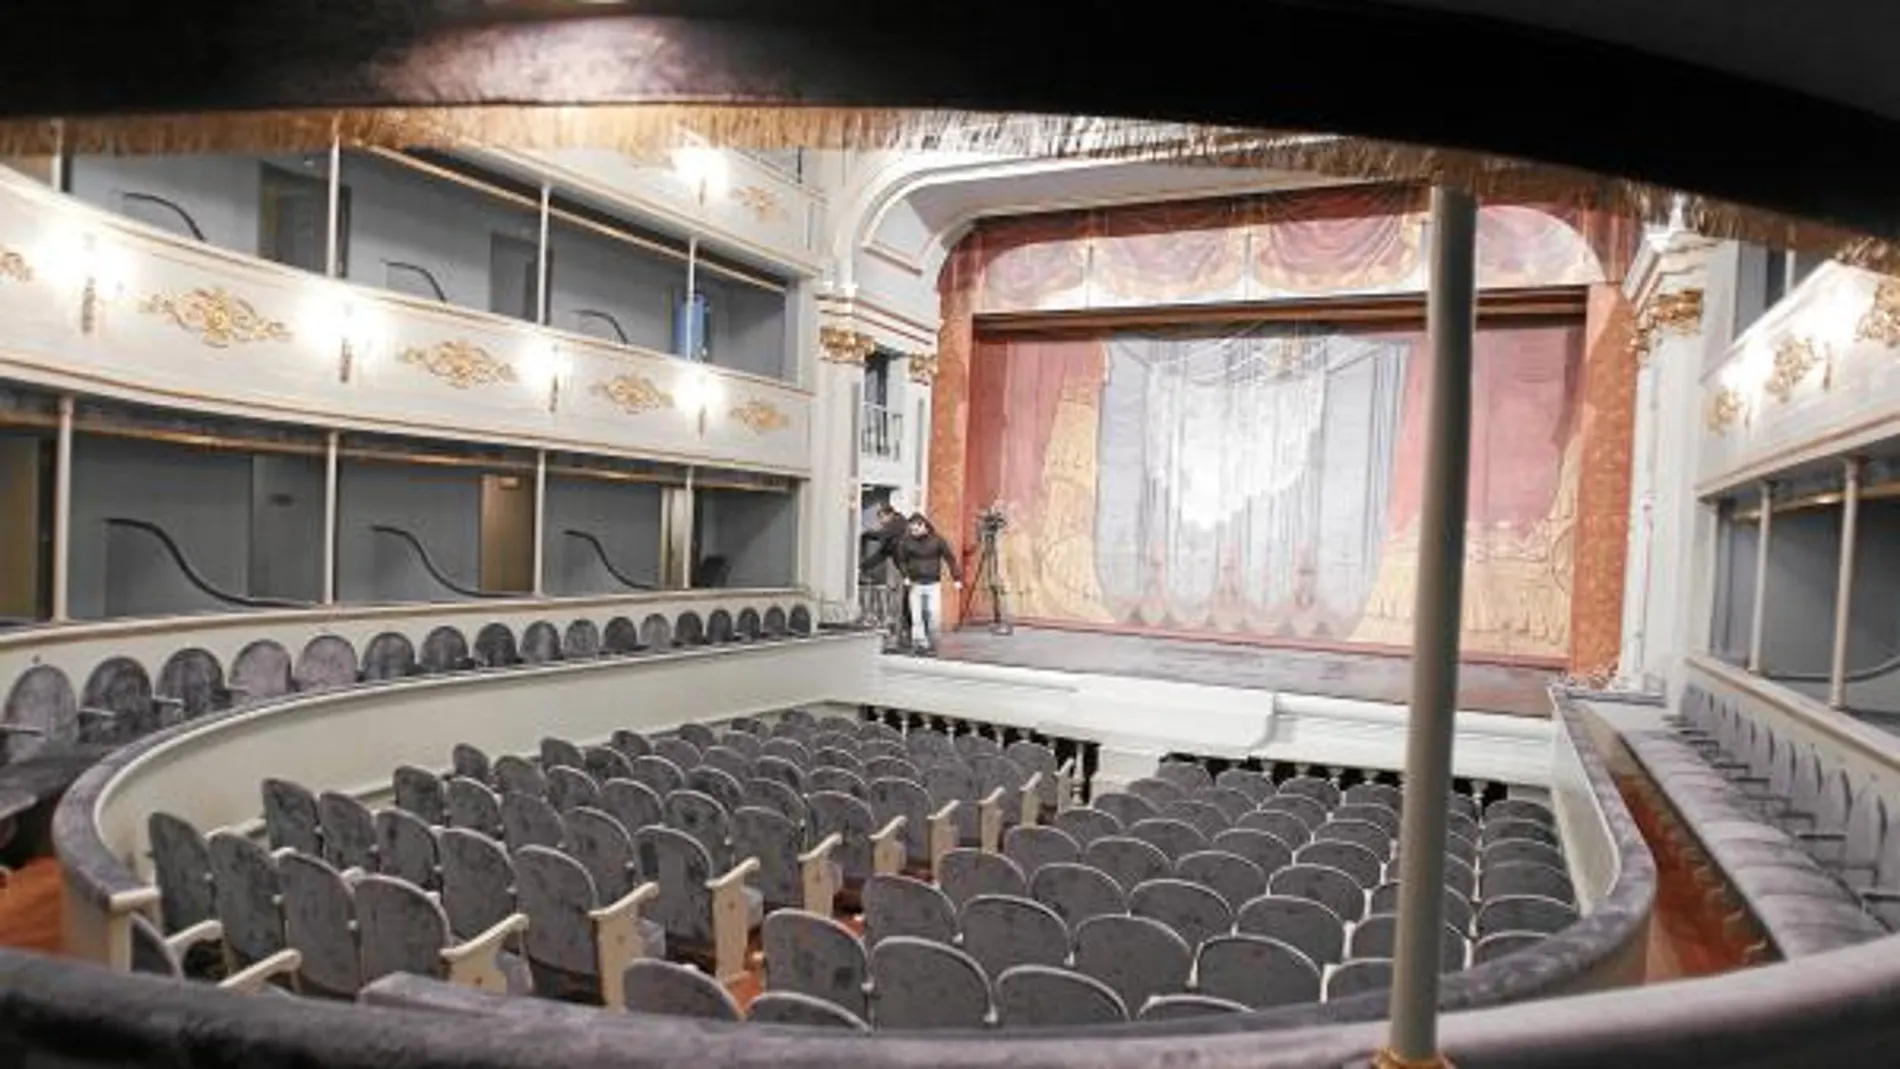 El teatro, con capacidad para 500 personas, está catalogado como Bien de Interés Cultural desde 1995 en la categoría de Monumento. Desde 1985 es gestionado por la Comunidad de Madrid